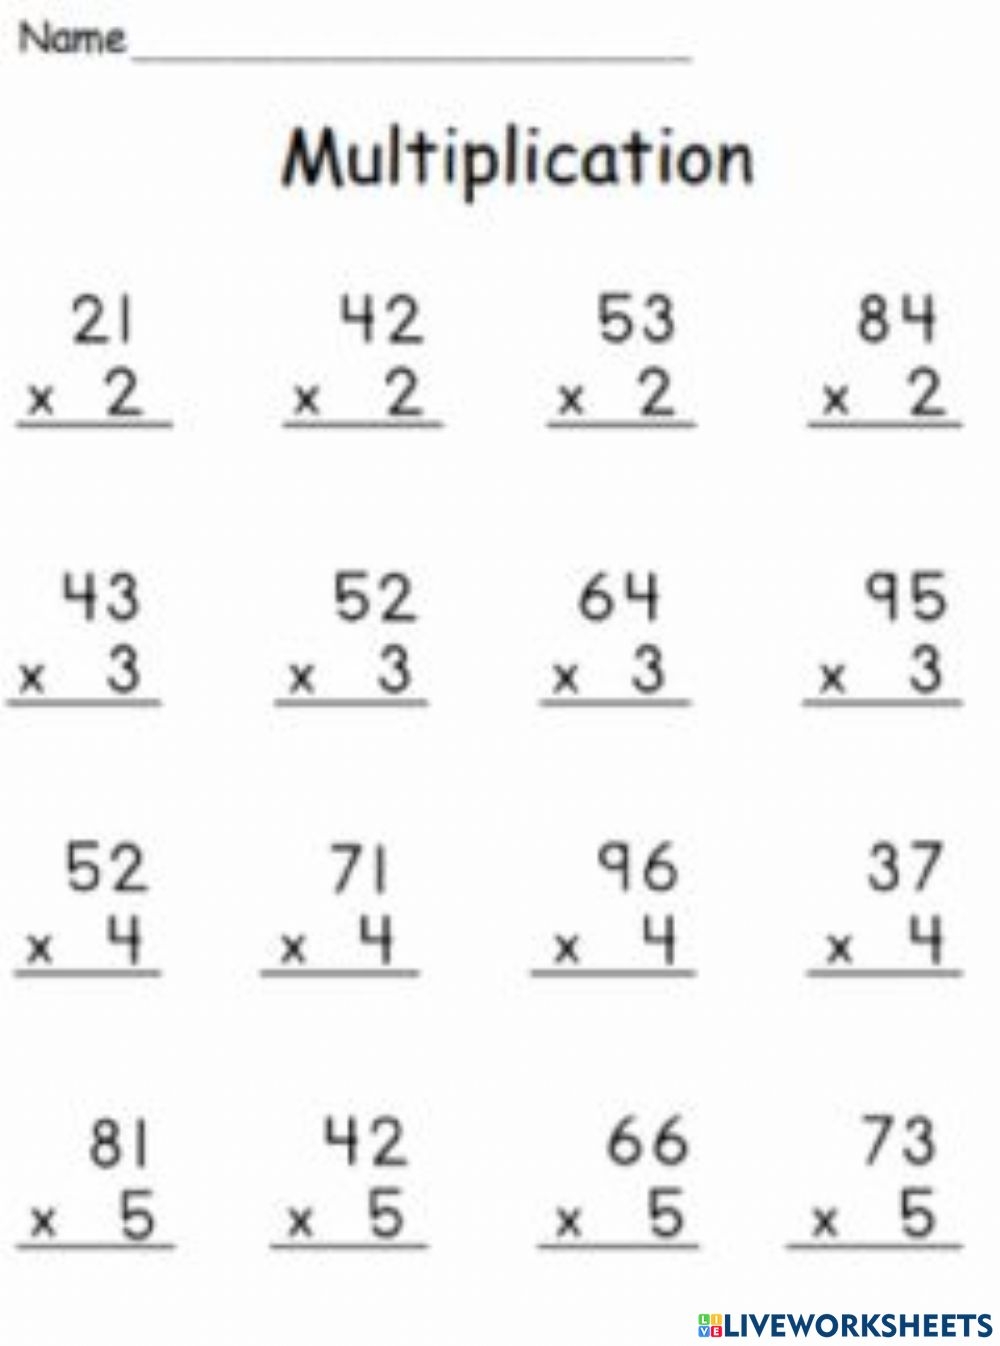 Multiplication Live Worksheets Grade 4